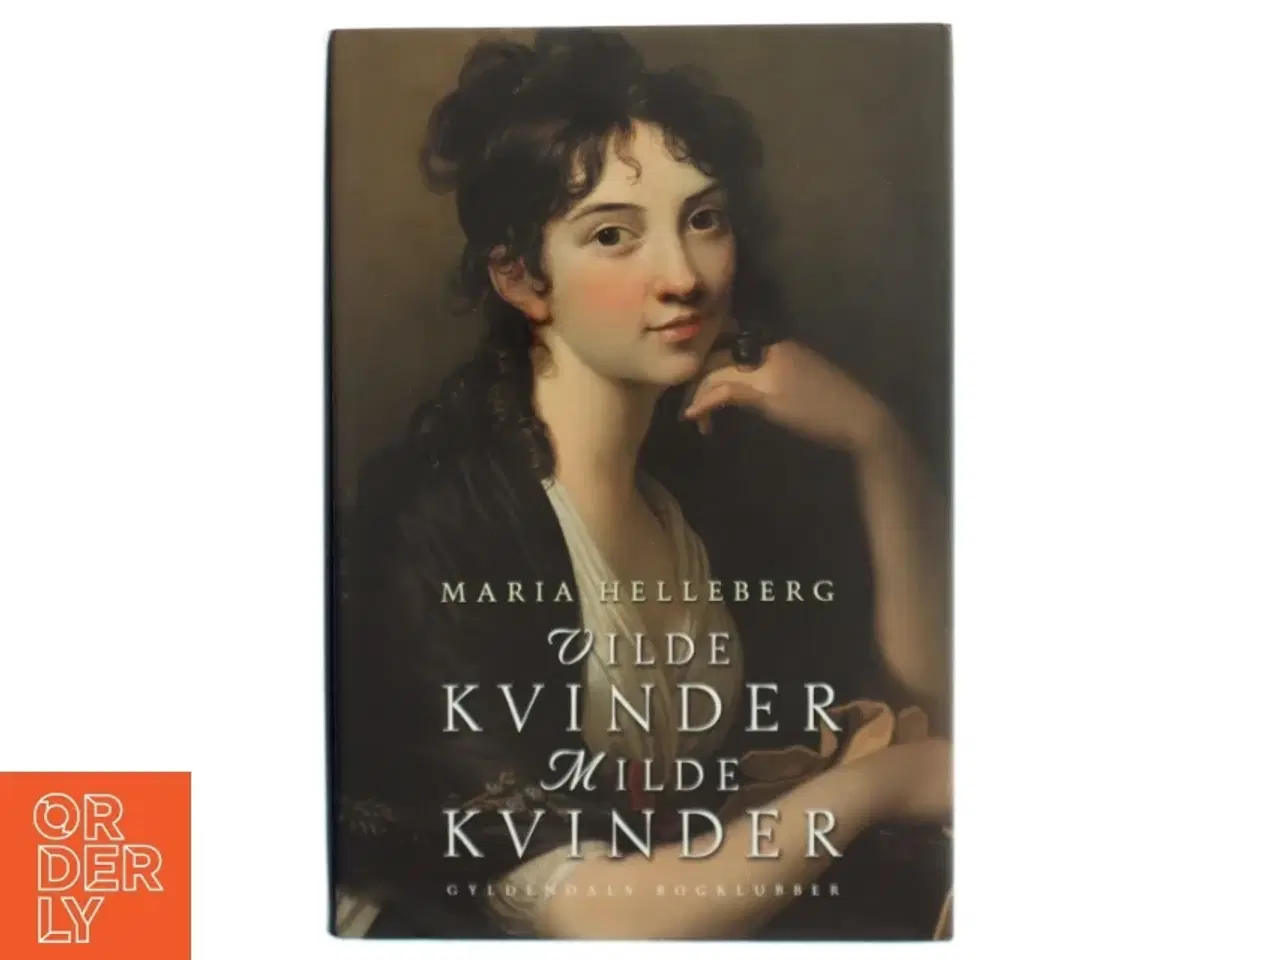 Billede 1 - Vilde kvinder, milde kvinder : 12 kvindeliv fra guldalderen af Maria Helleberg (Bog)